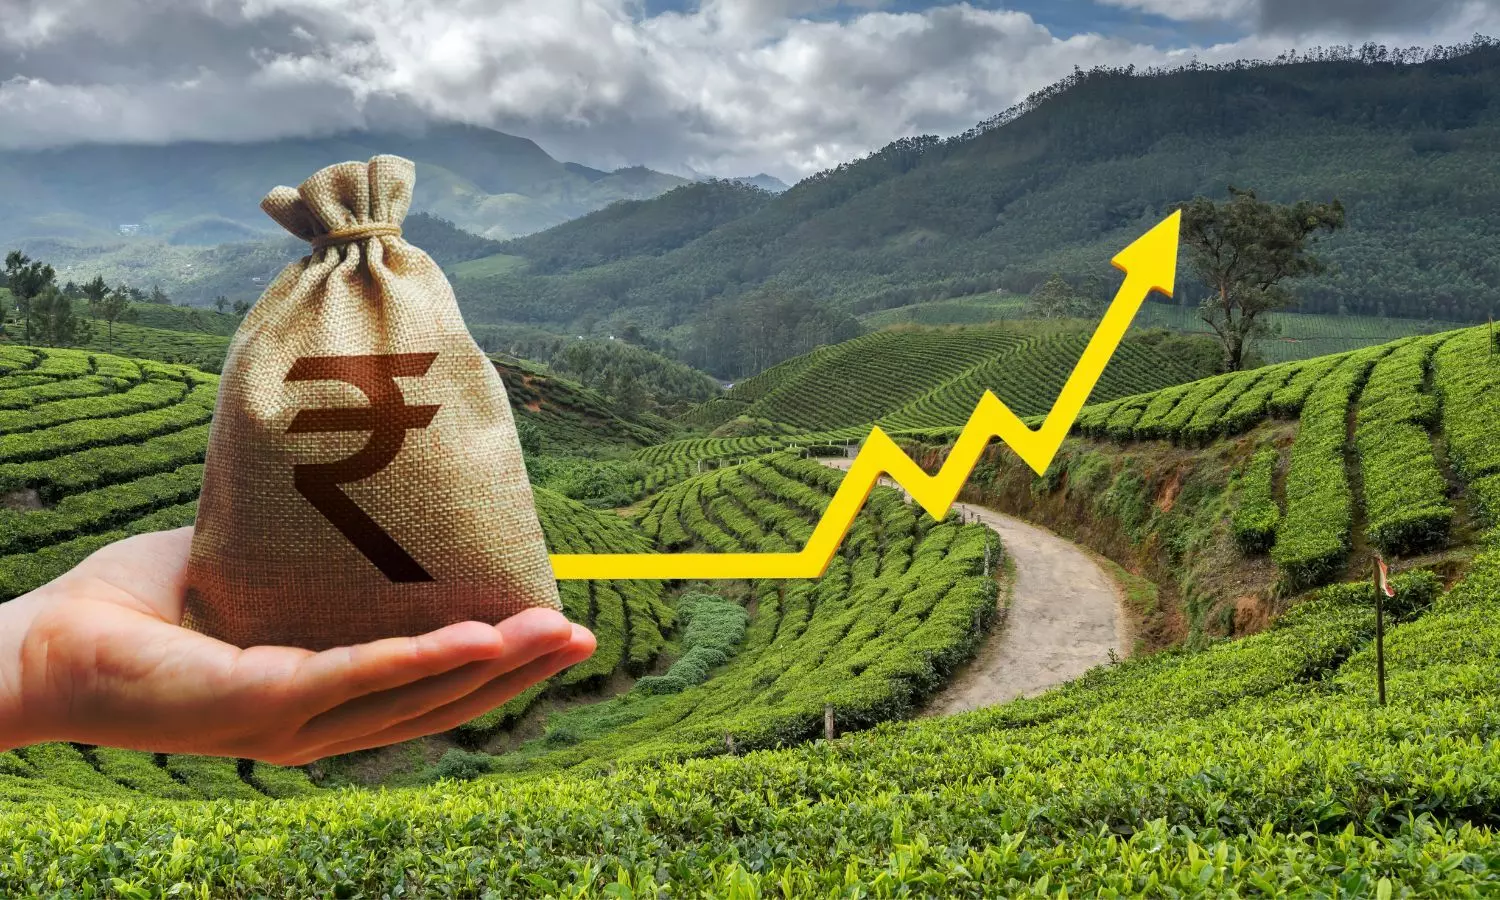 Indian Rupee sack